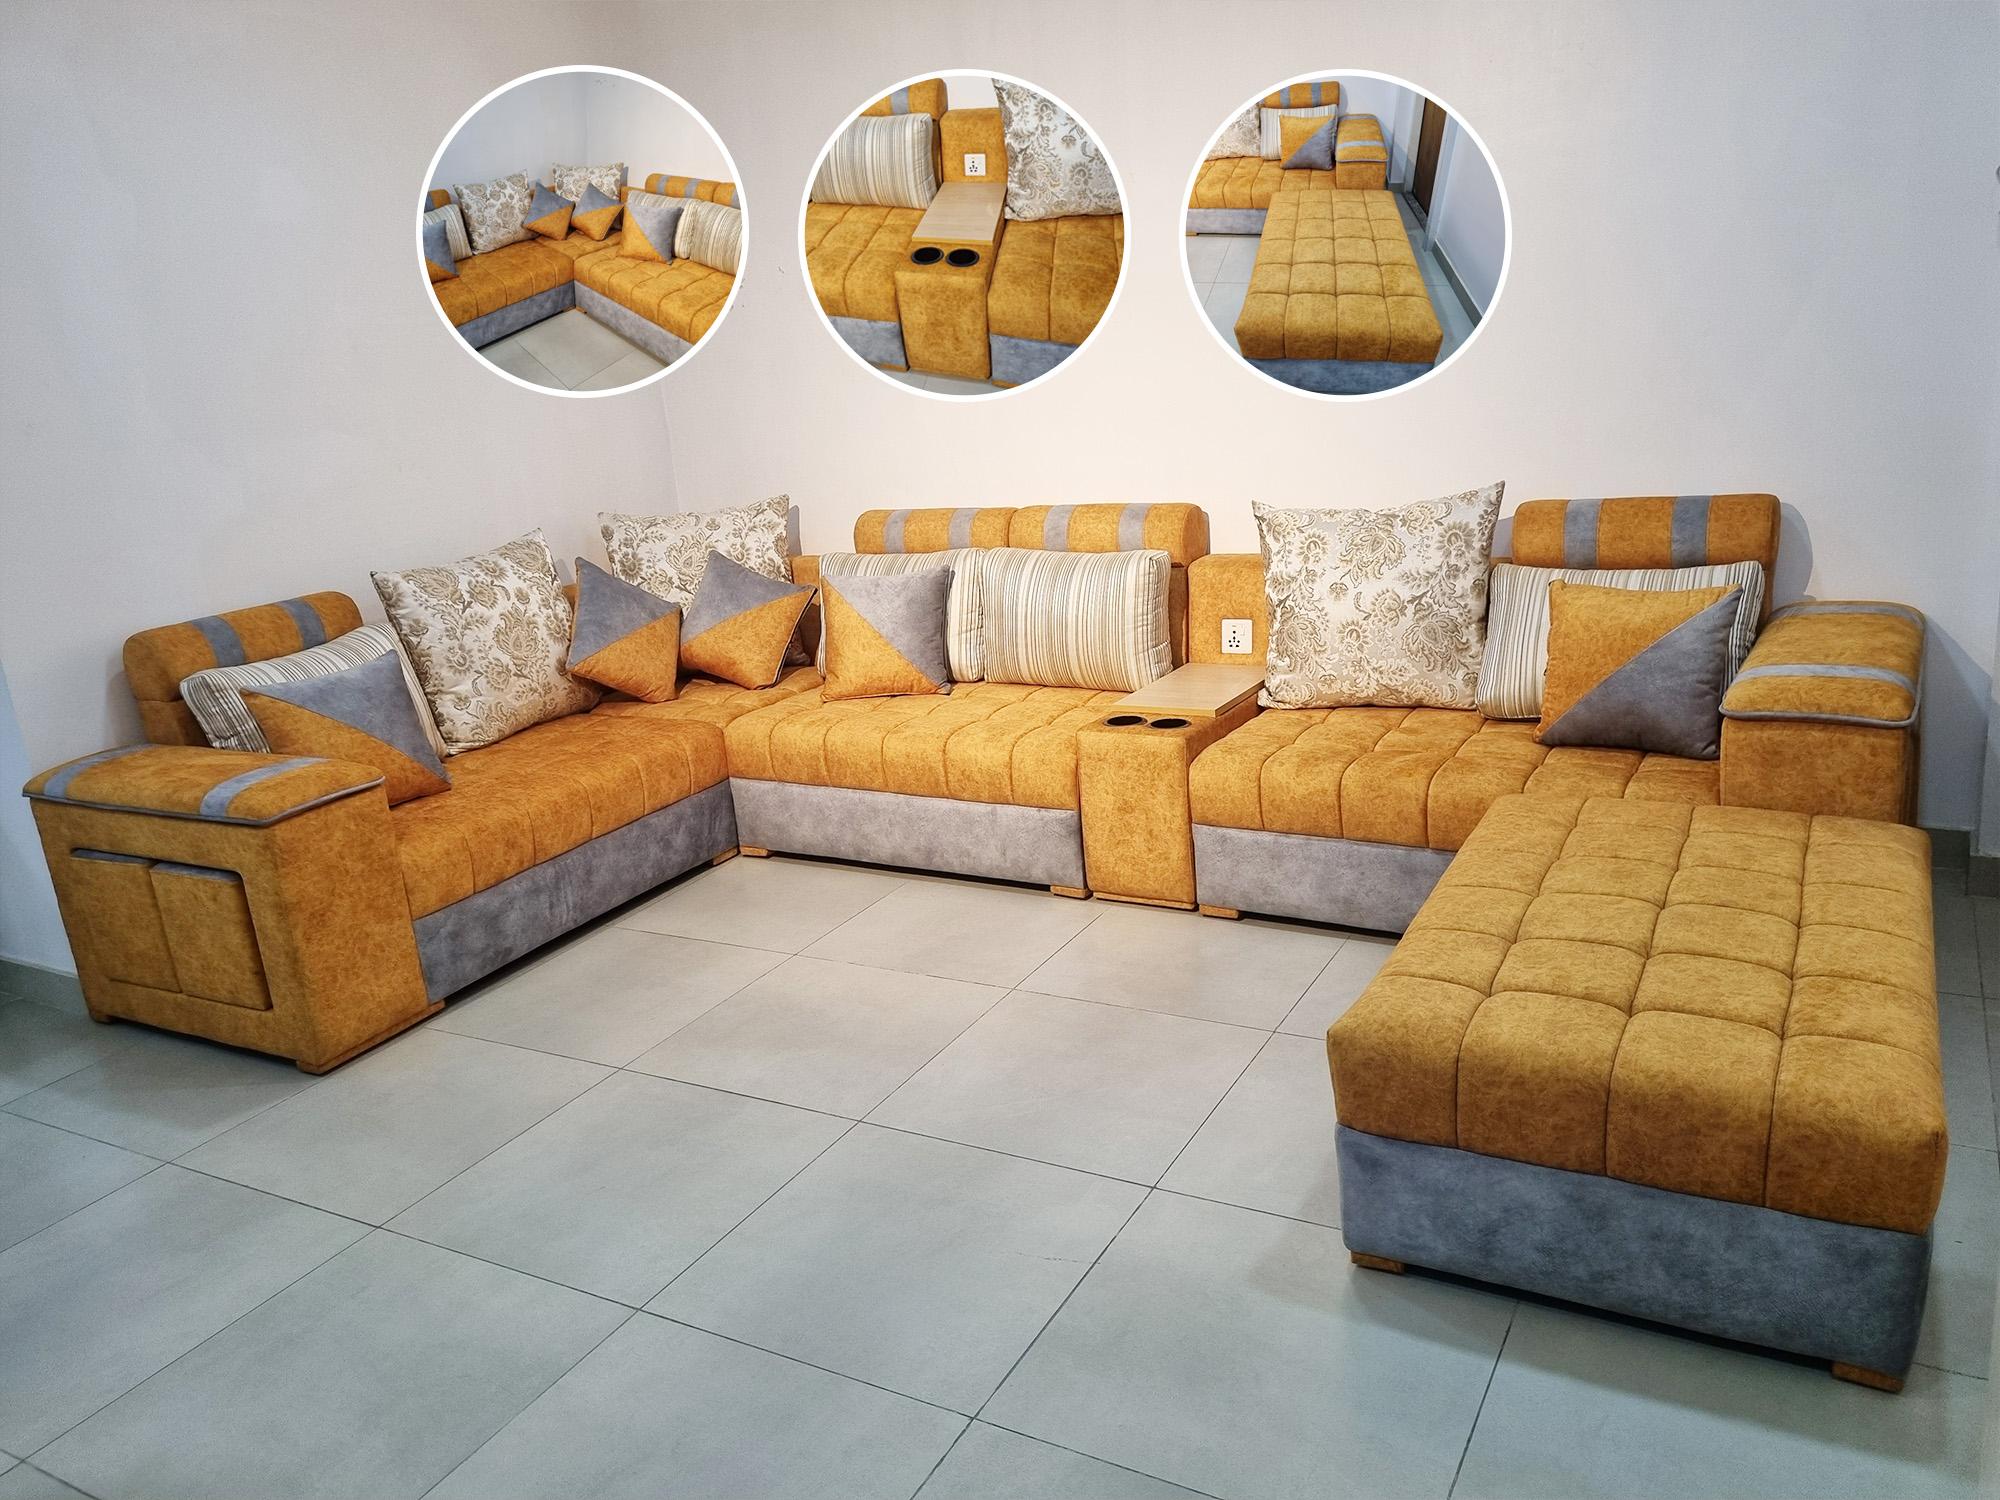 Bed Design Sofa